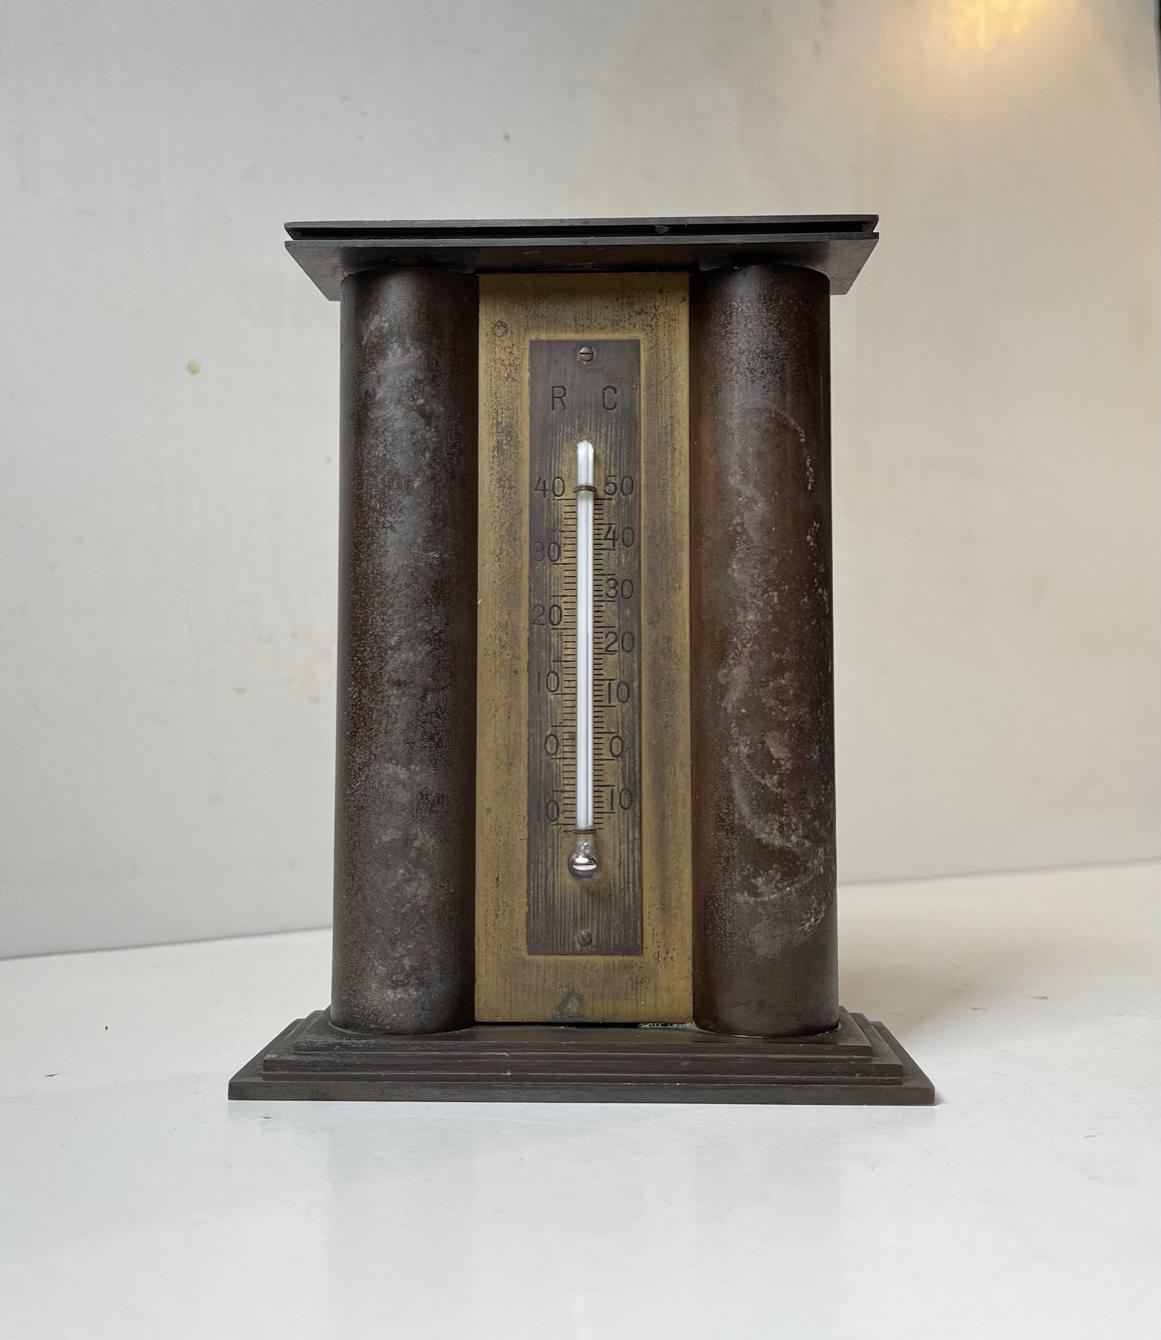 Banque d'argent et thermomètre architectural Art Déco stylisé en bronze. Il représente l'entrée de la compagnie d'assurance danoise Baltica. Cet article a été conçu et breveté par l'architecte danois C. Glahn dans les années 1930. Il est livré avec